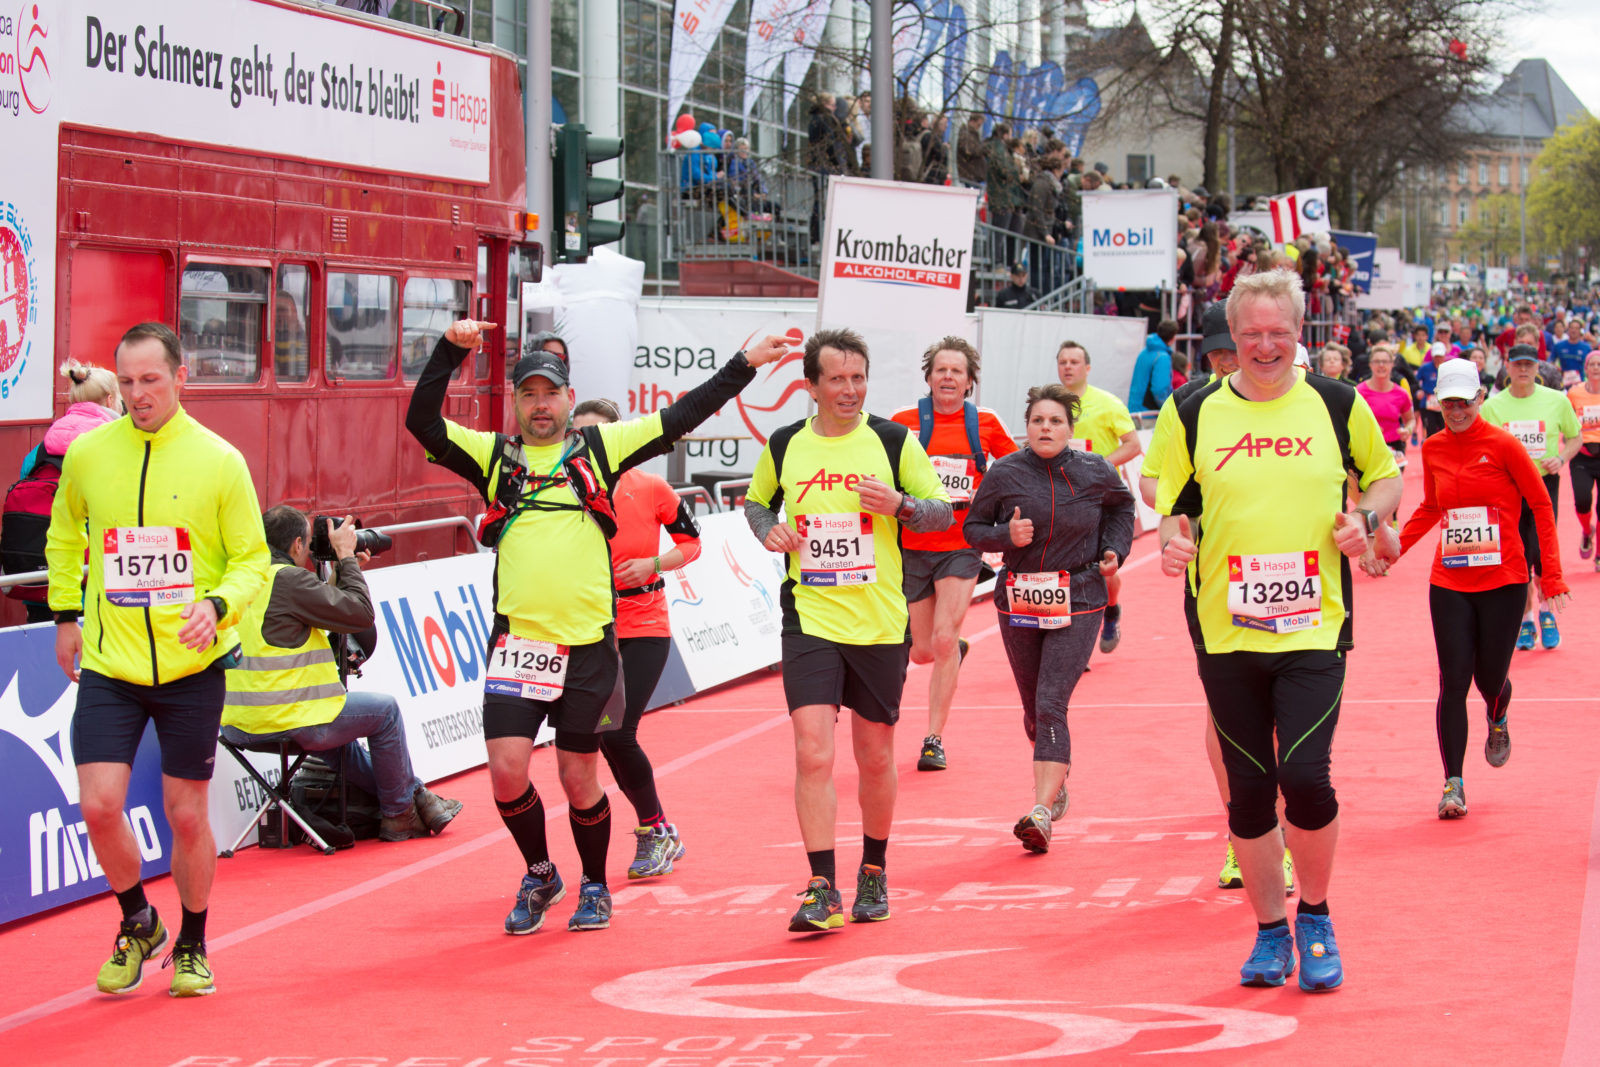 Not ready for a marathon? Then enter as a relay team!